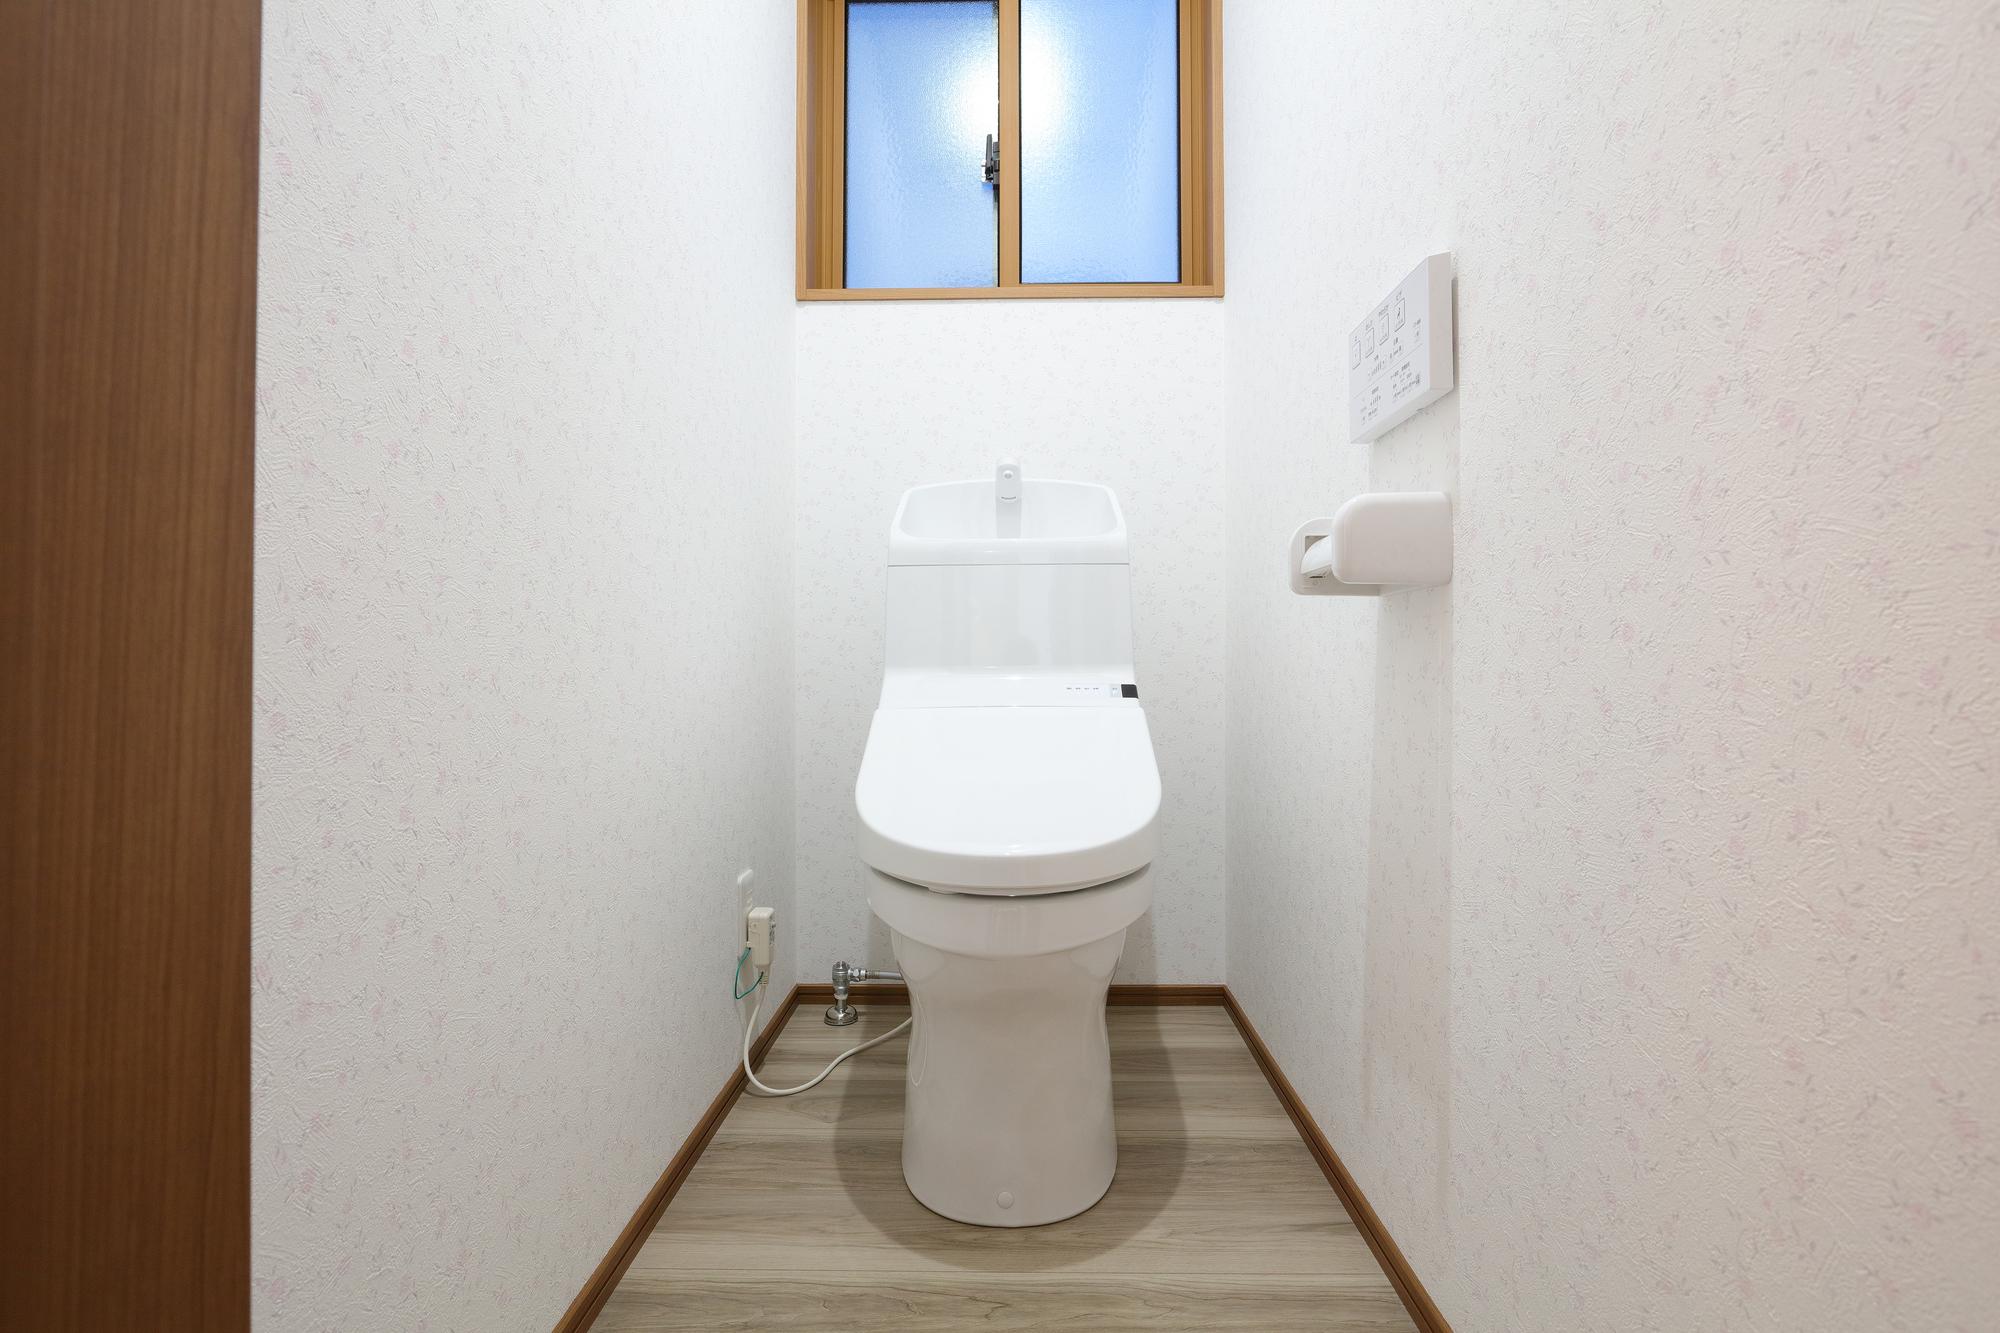 【トイレの壁と床の掃除方法】ニオイはトイレの壁と床の汚れが原因｜生活お役立ち情報